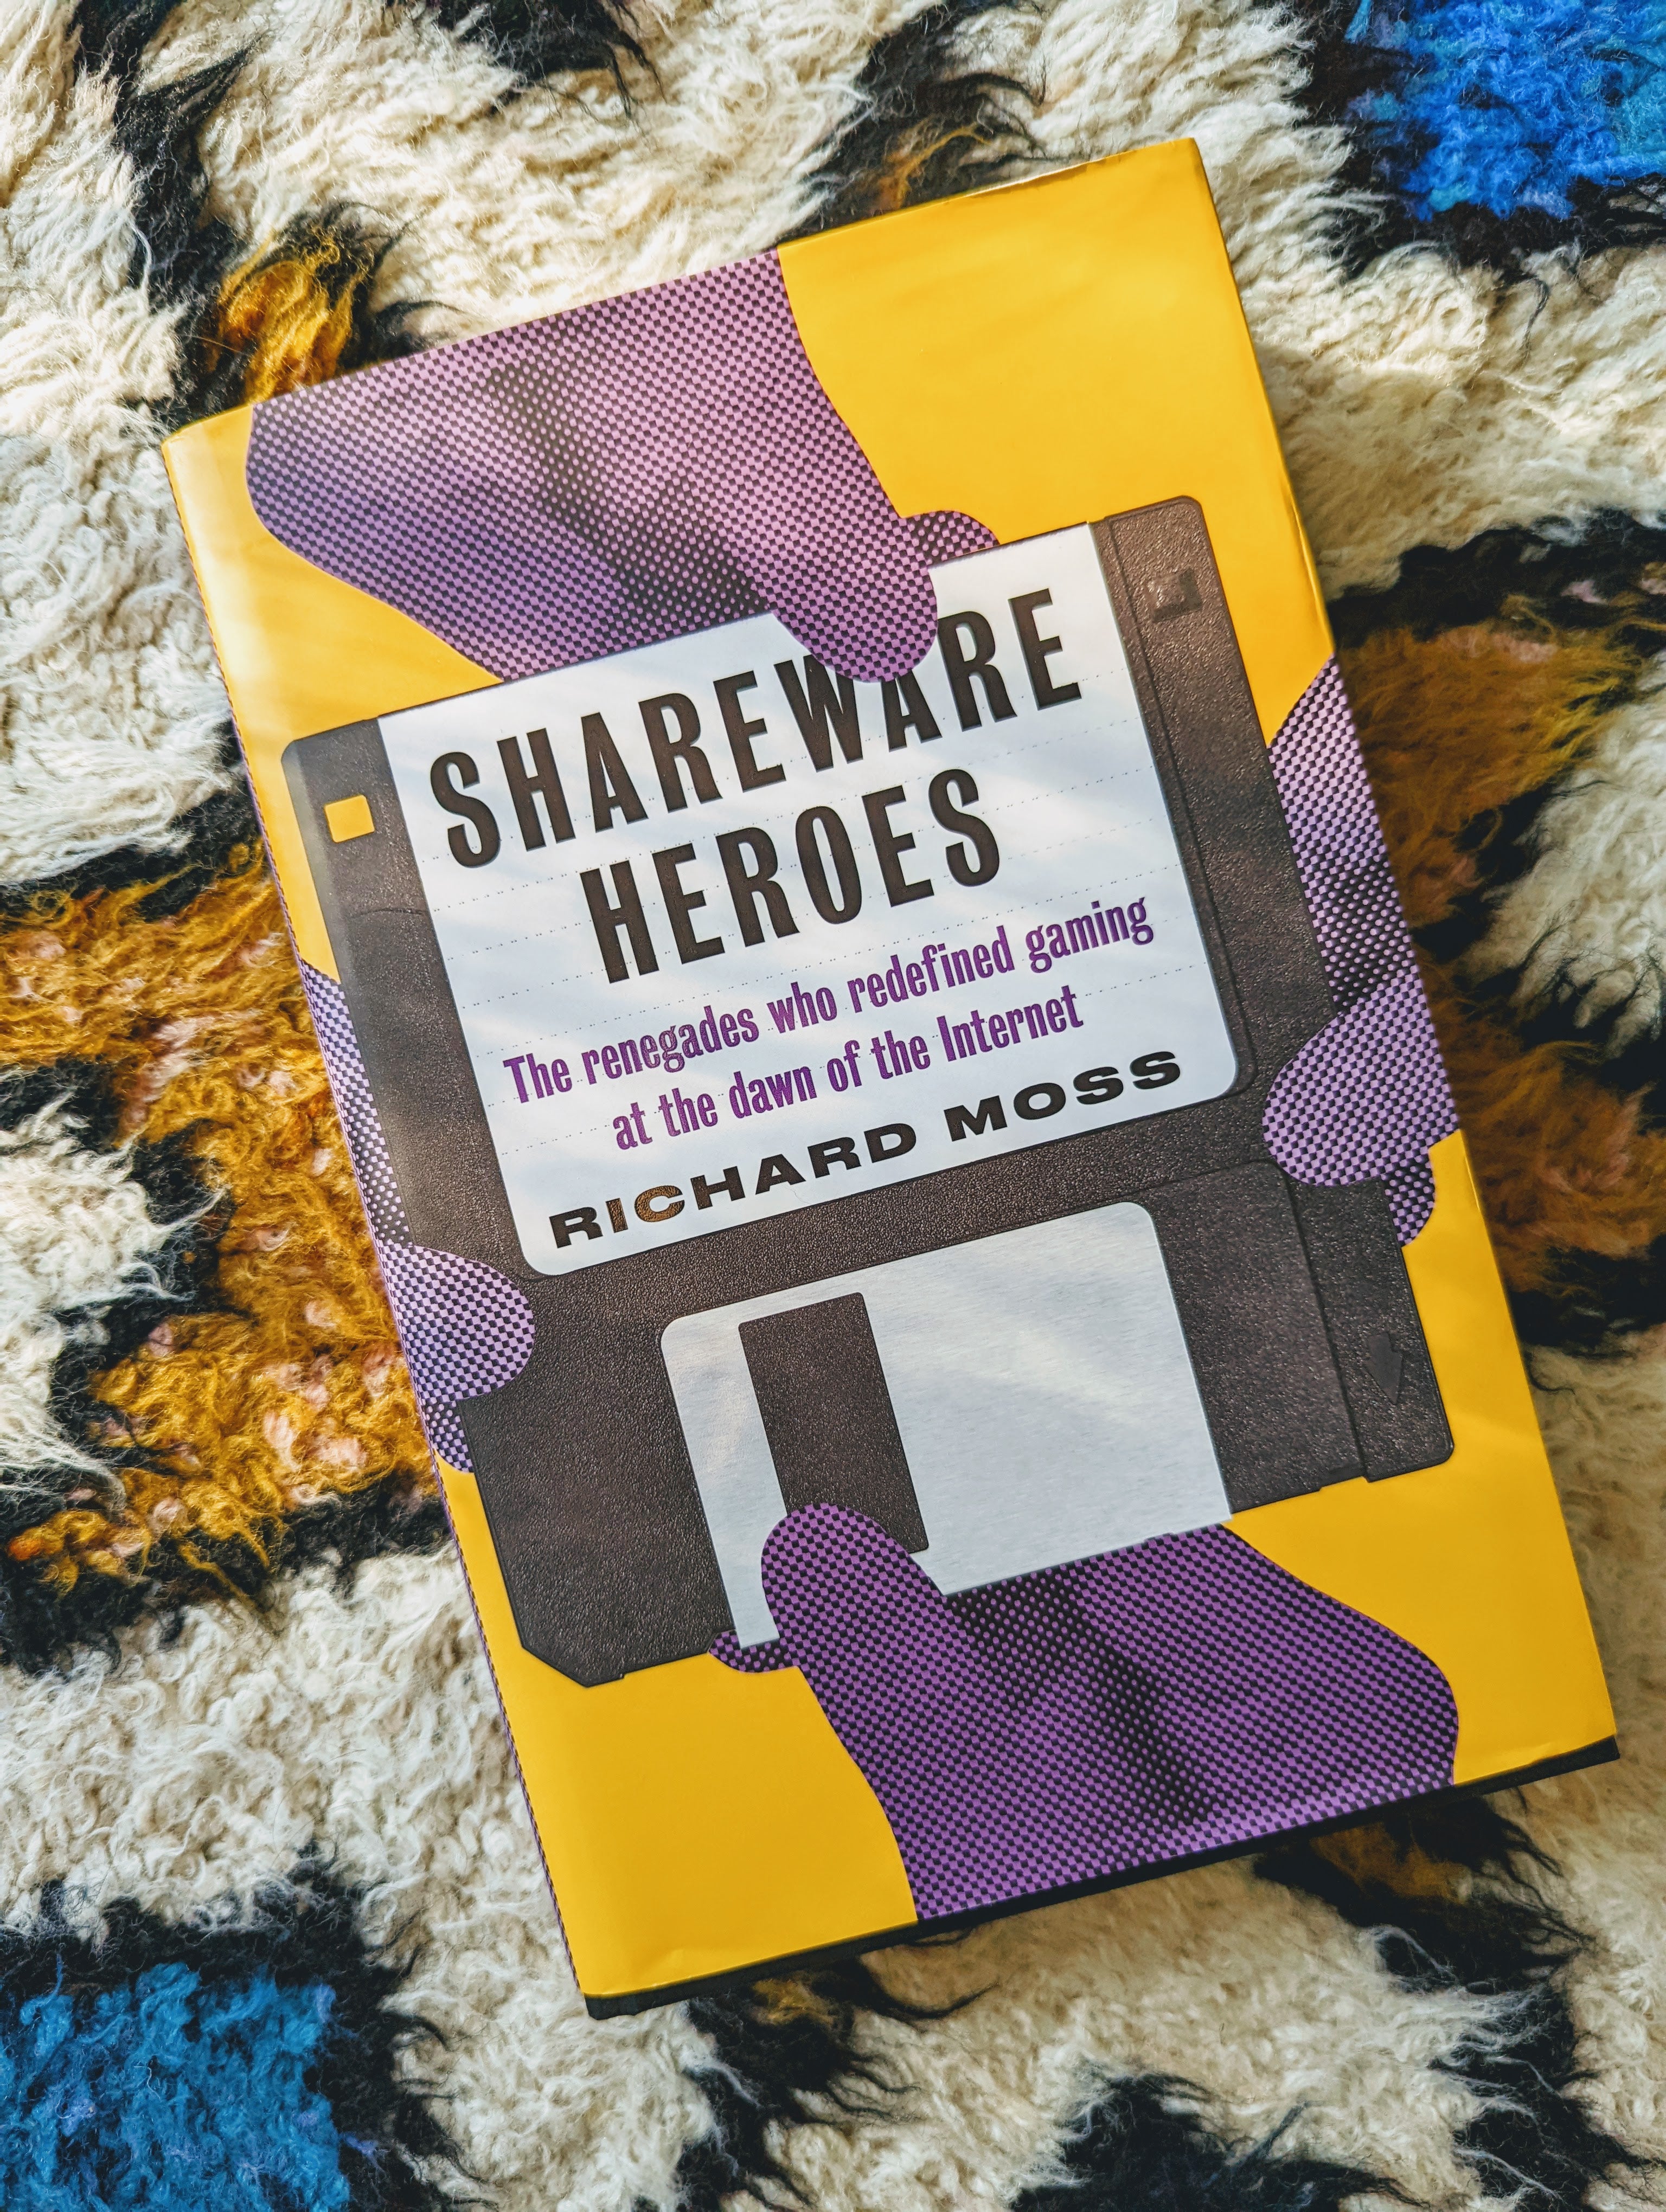 Bertie'nin harika çok renkli halısında resmedilen Shareware Heroes kitabı.  Kitap kapağında, kitabın ve yazar Richard Ross'un adını taşıyan bir disketi çeken dört mor el vardır.  Kitabın geri kalanı sarı renklidir.